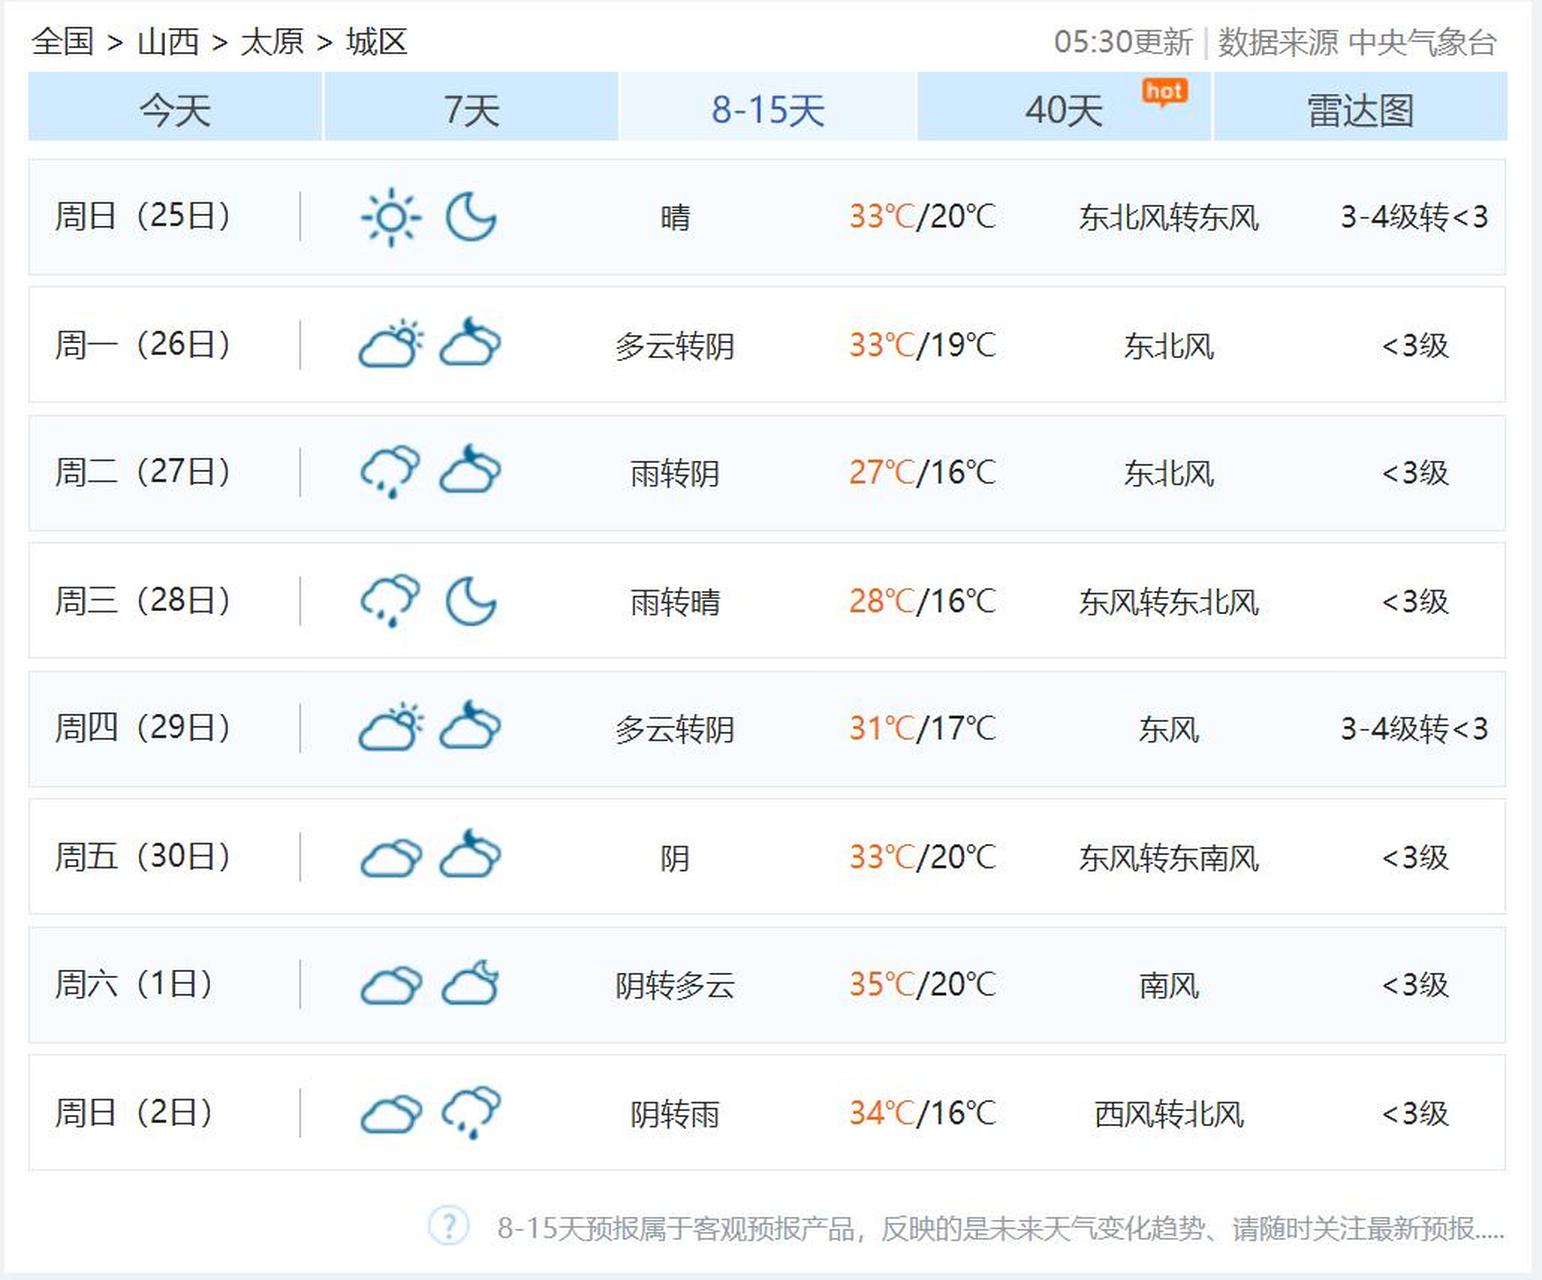 6月18日7时,太原市气象台发布短期天气预报:  今天白天:多云转阴